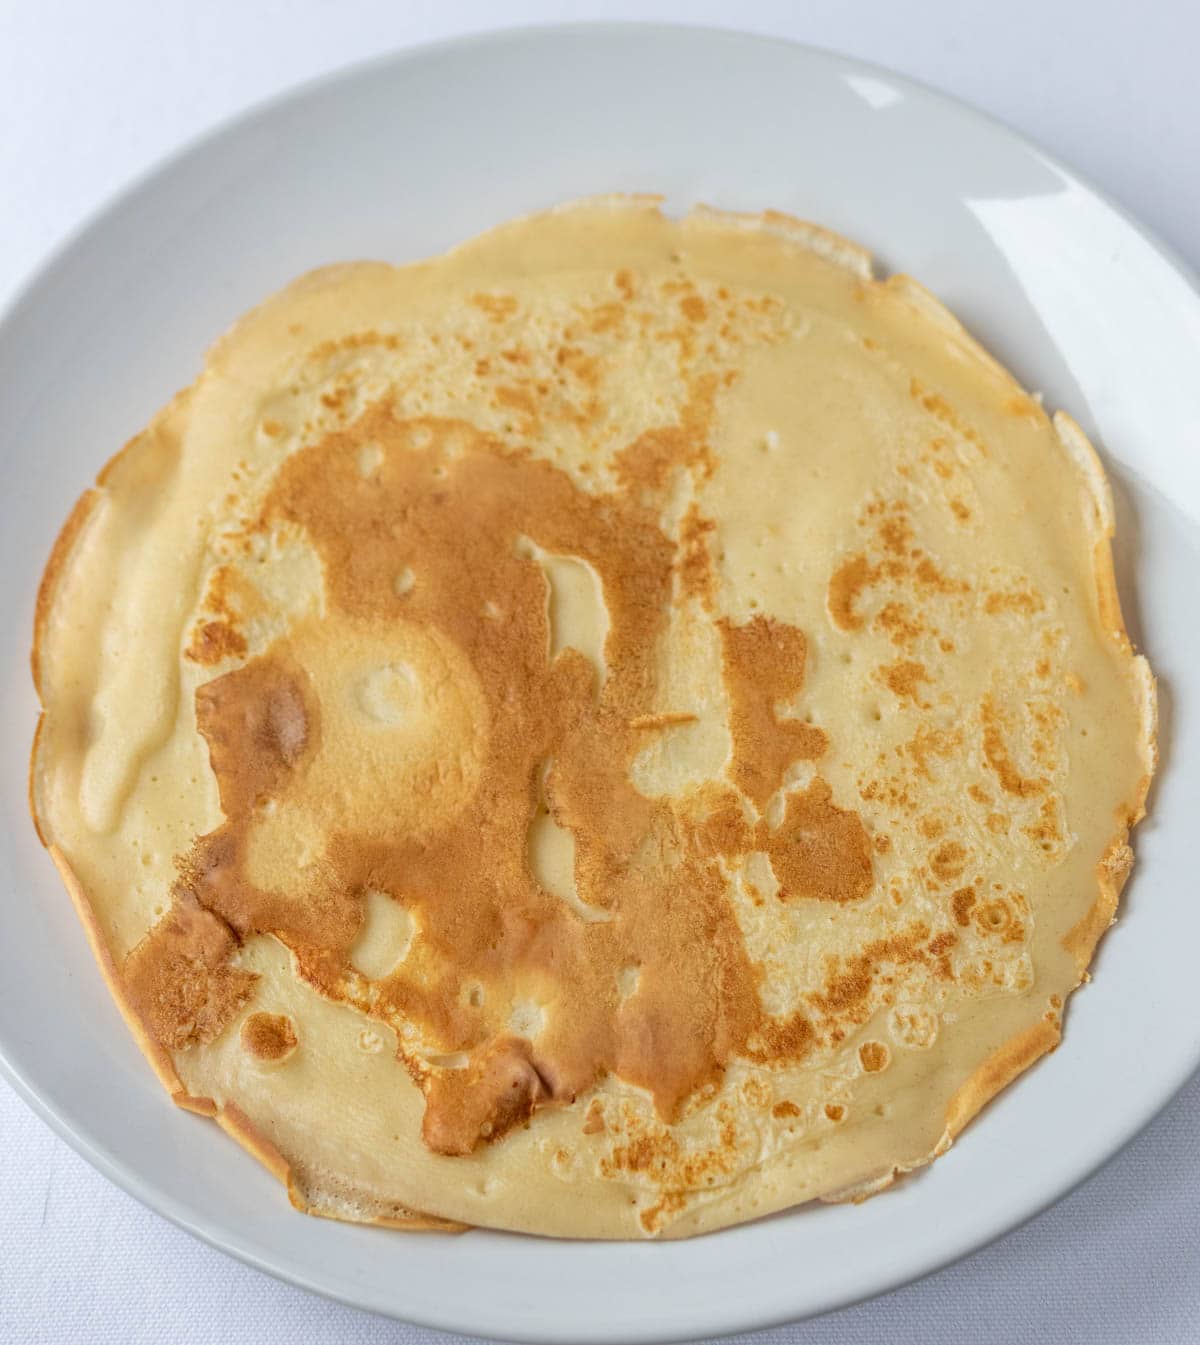 Savoury pancake on a plate.